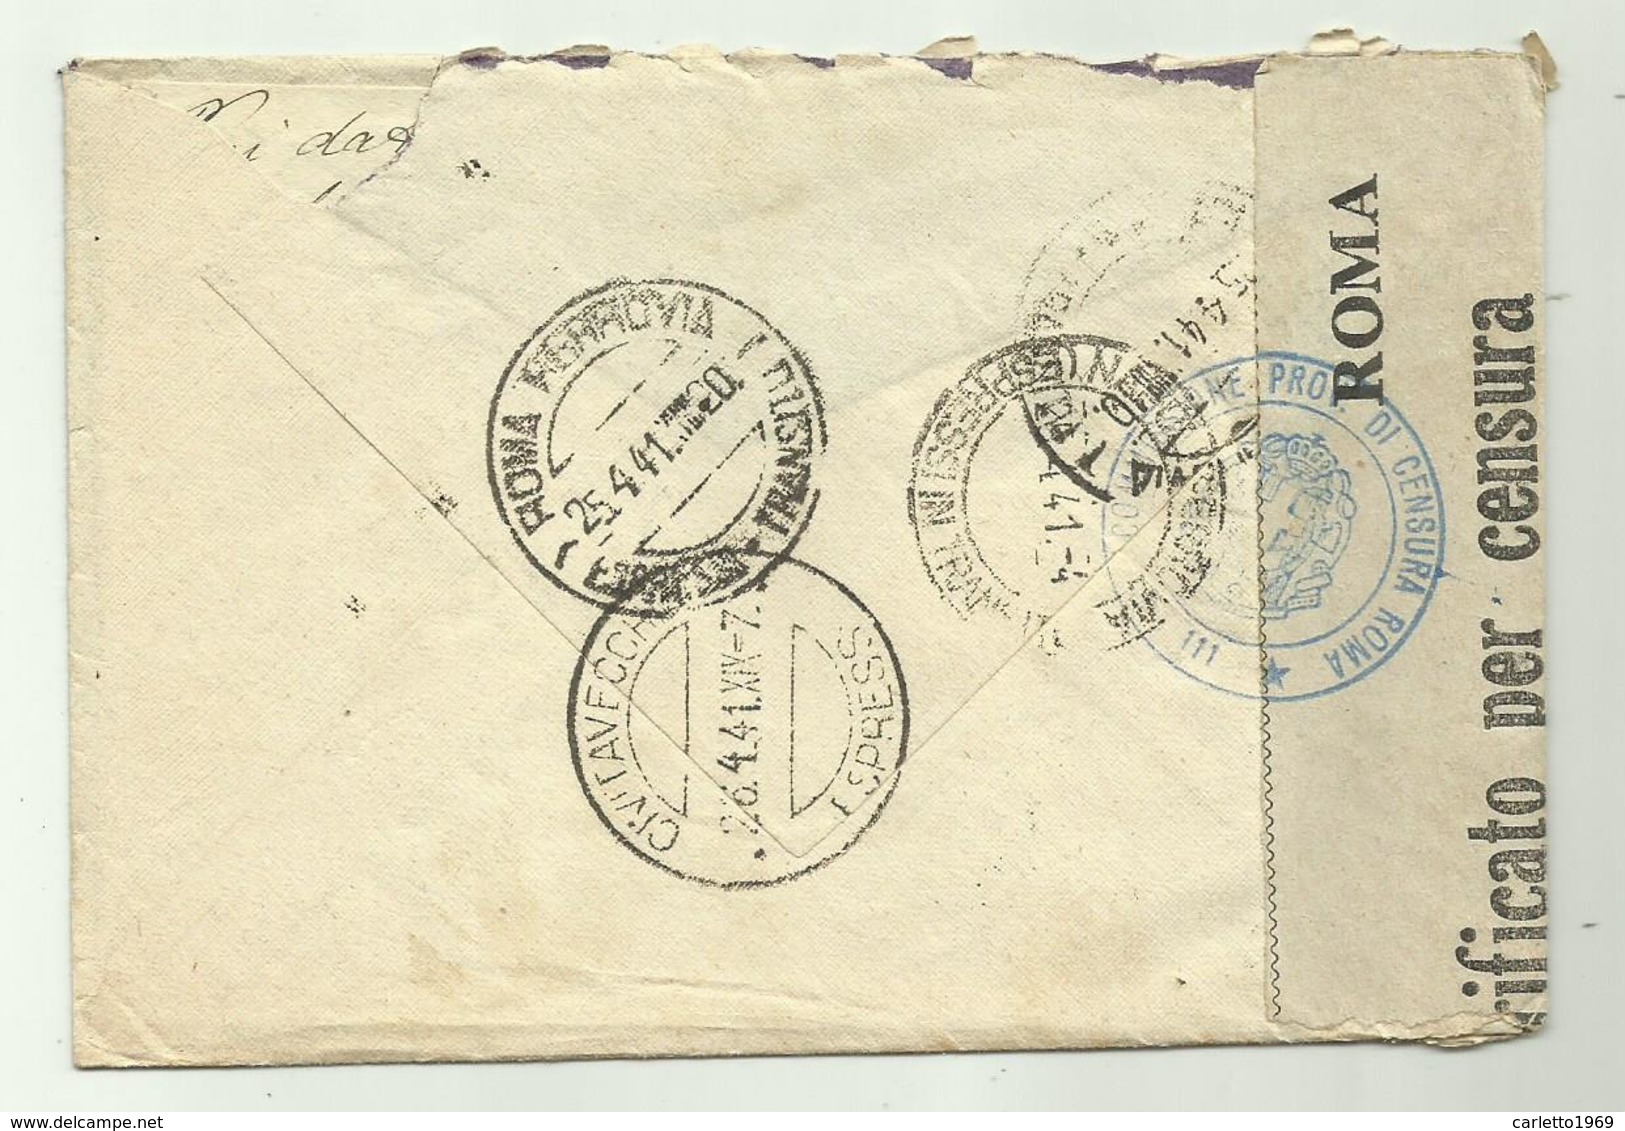 FRANCOBOLLI CENT. 50 + ESPRESSO LIRE 1,25 CON CENSURA COMMISSIONE ROMA 1941  SU BUSTA - Poststempel